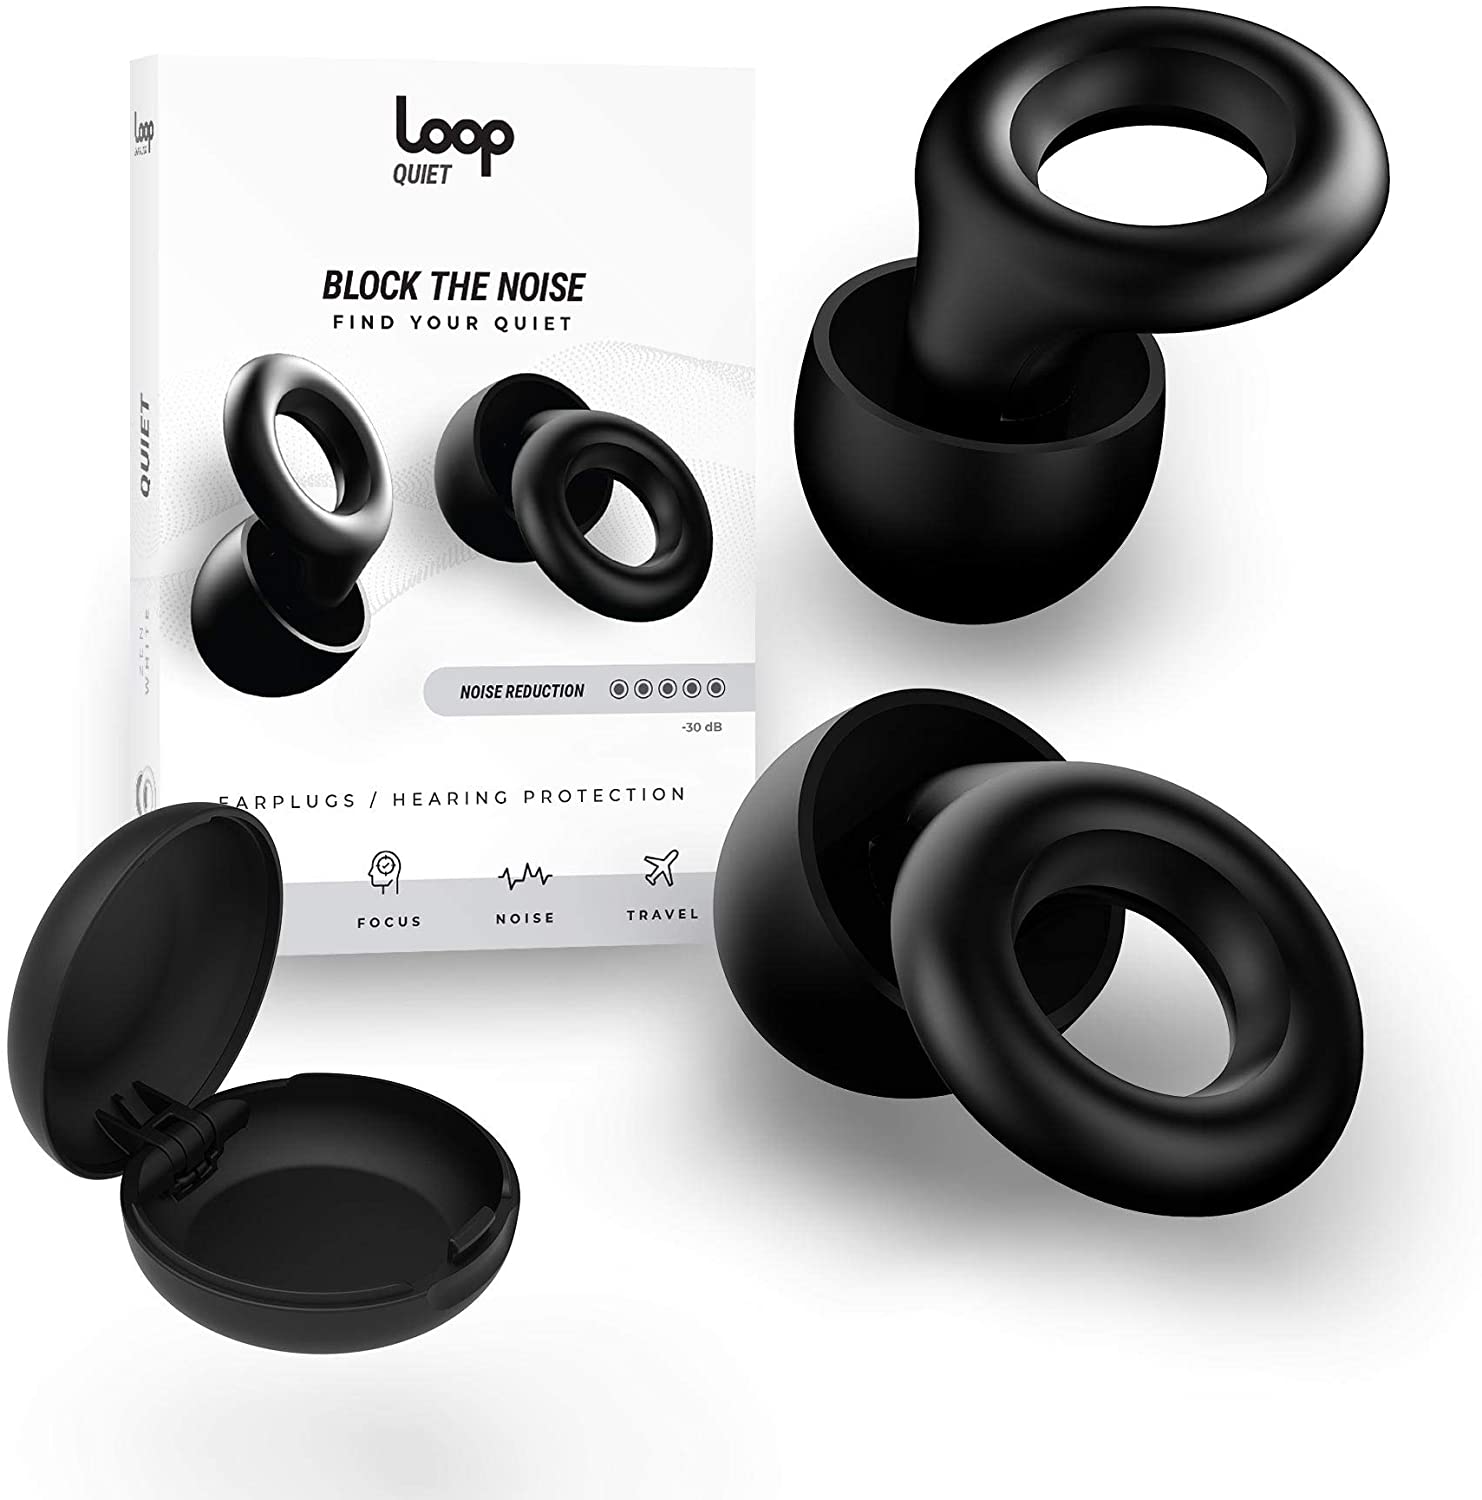 The Best Earplugs For Me — Loop Earplugs 